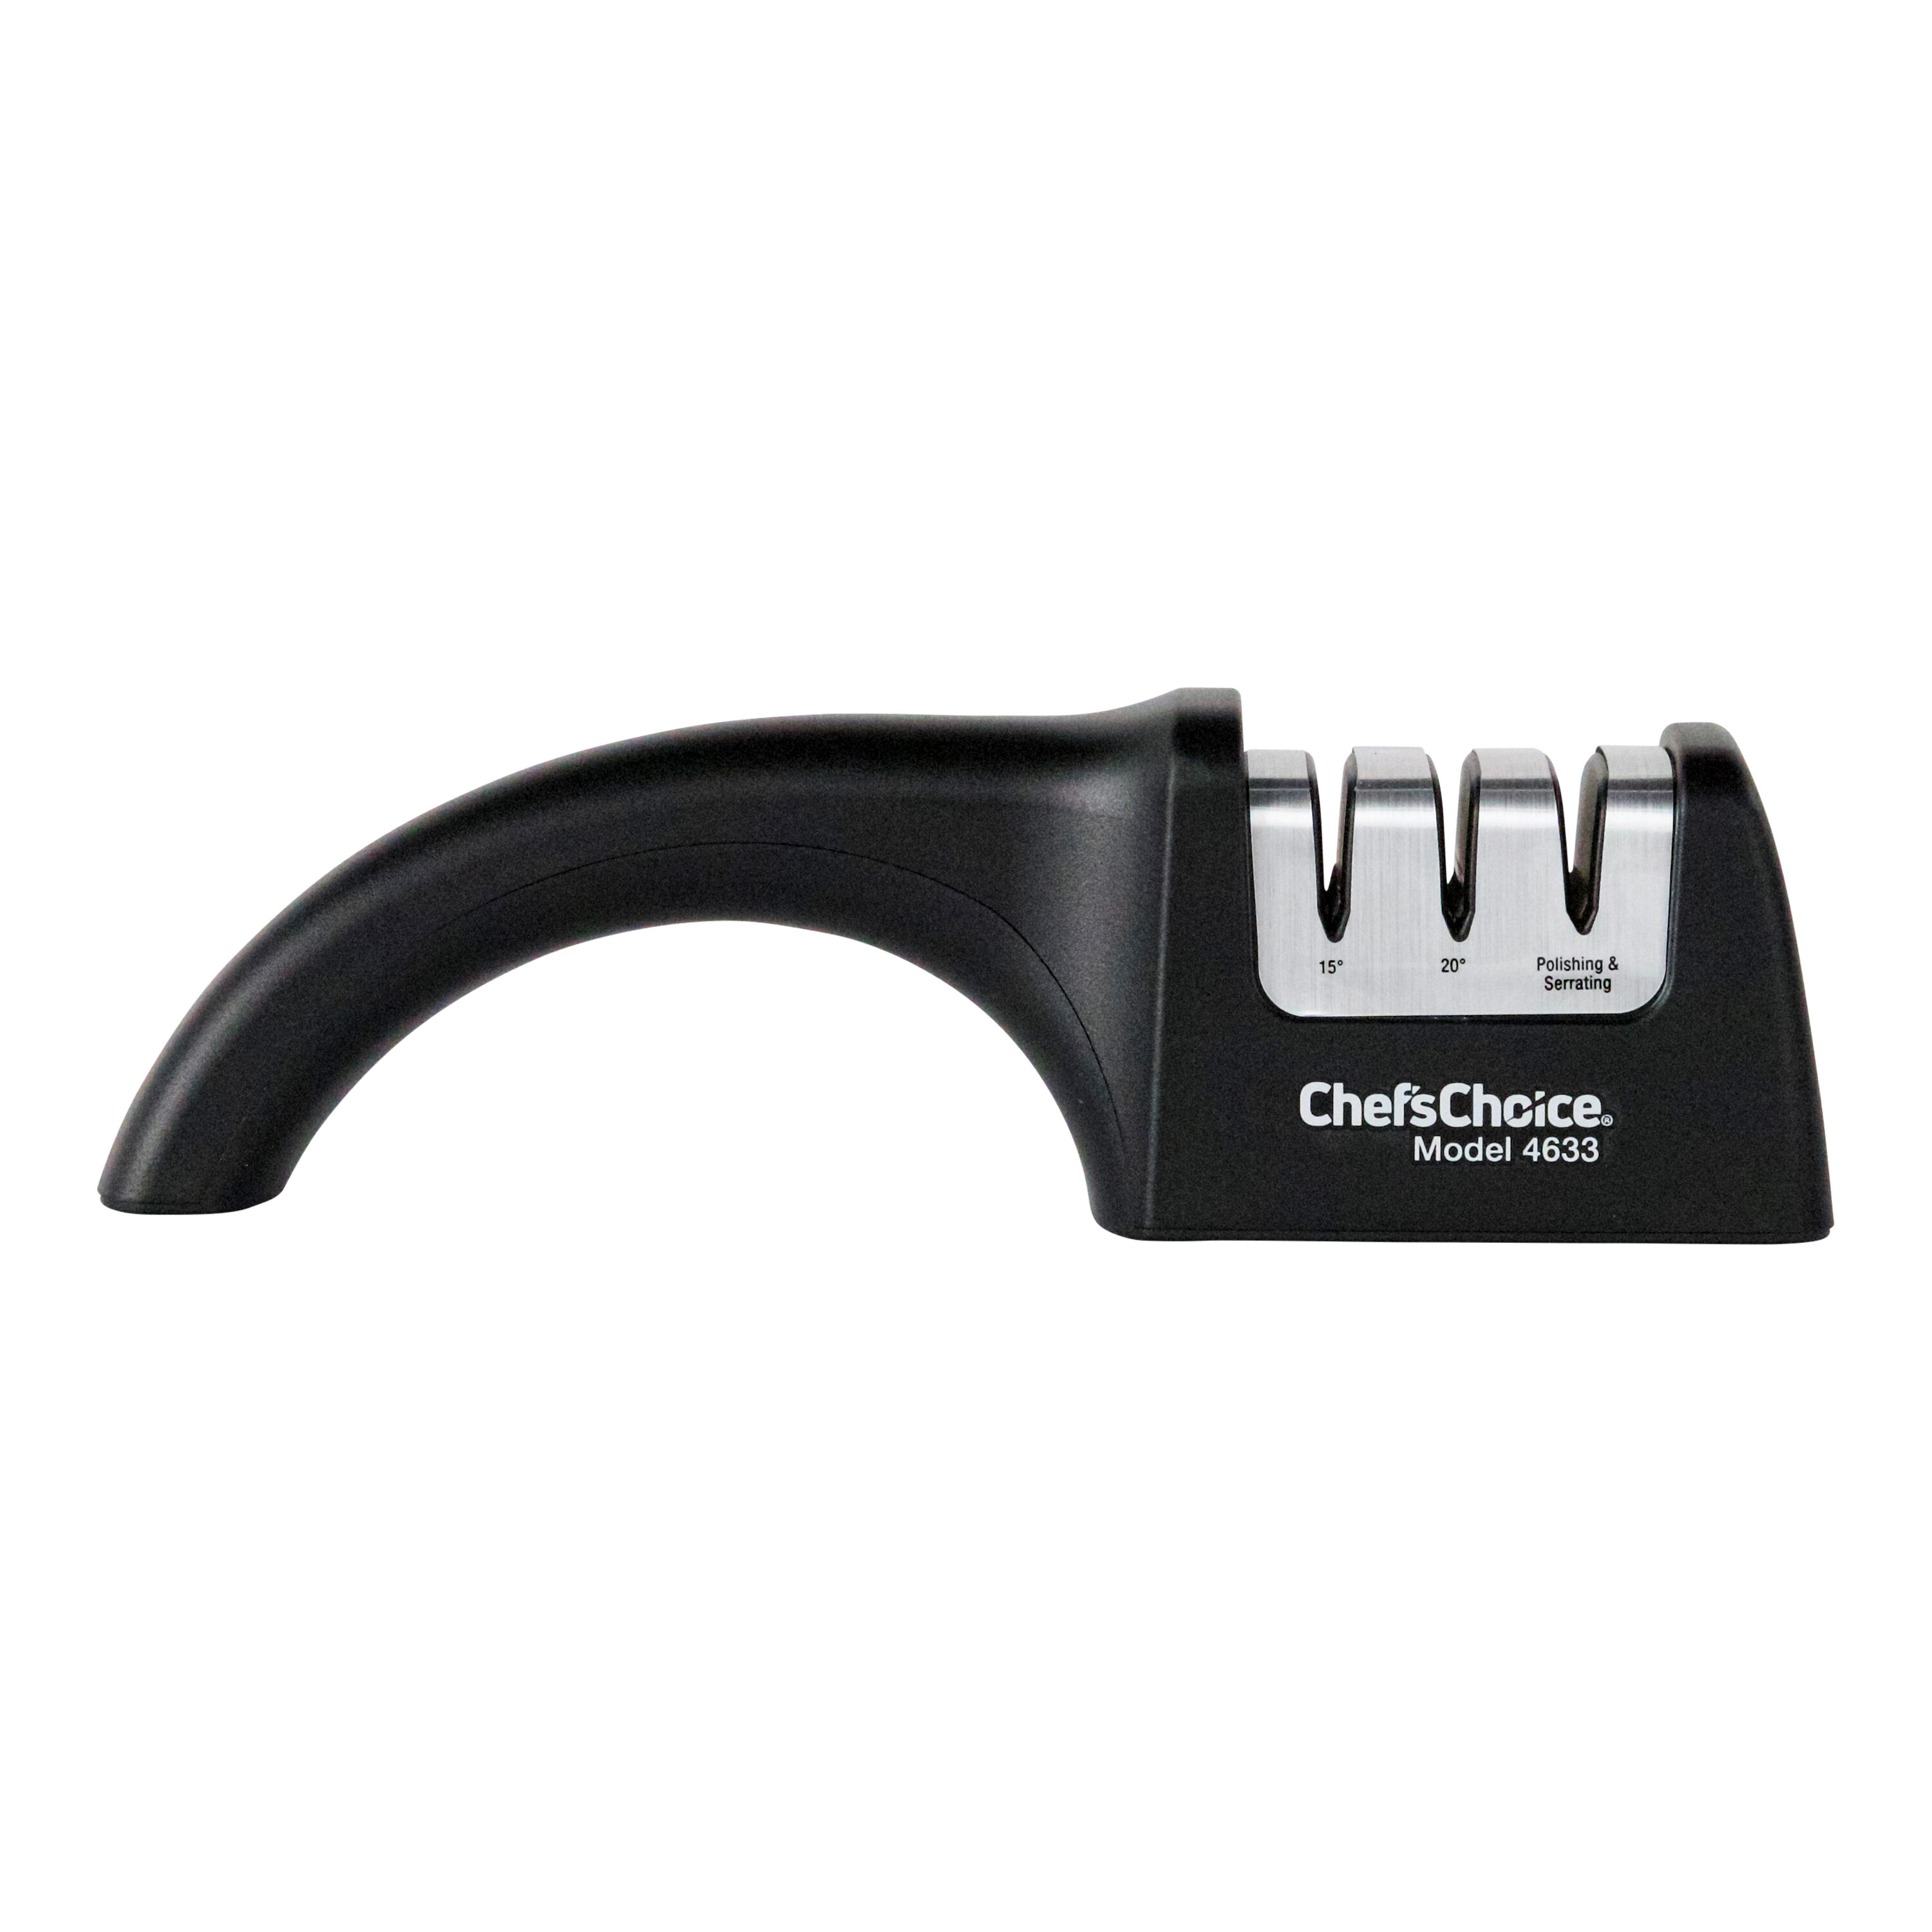 Diamond Kitchen Knife Sharpener & Scissors Sharpener With Safety Glove